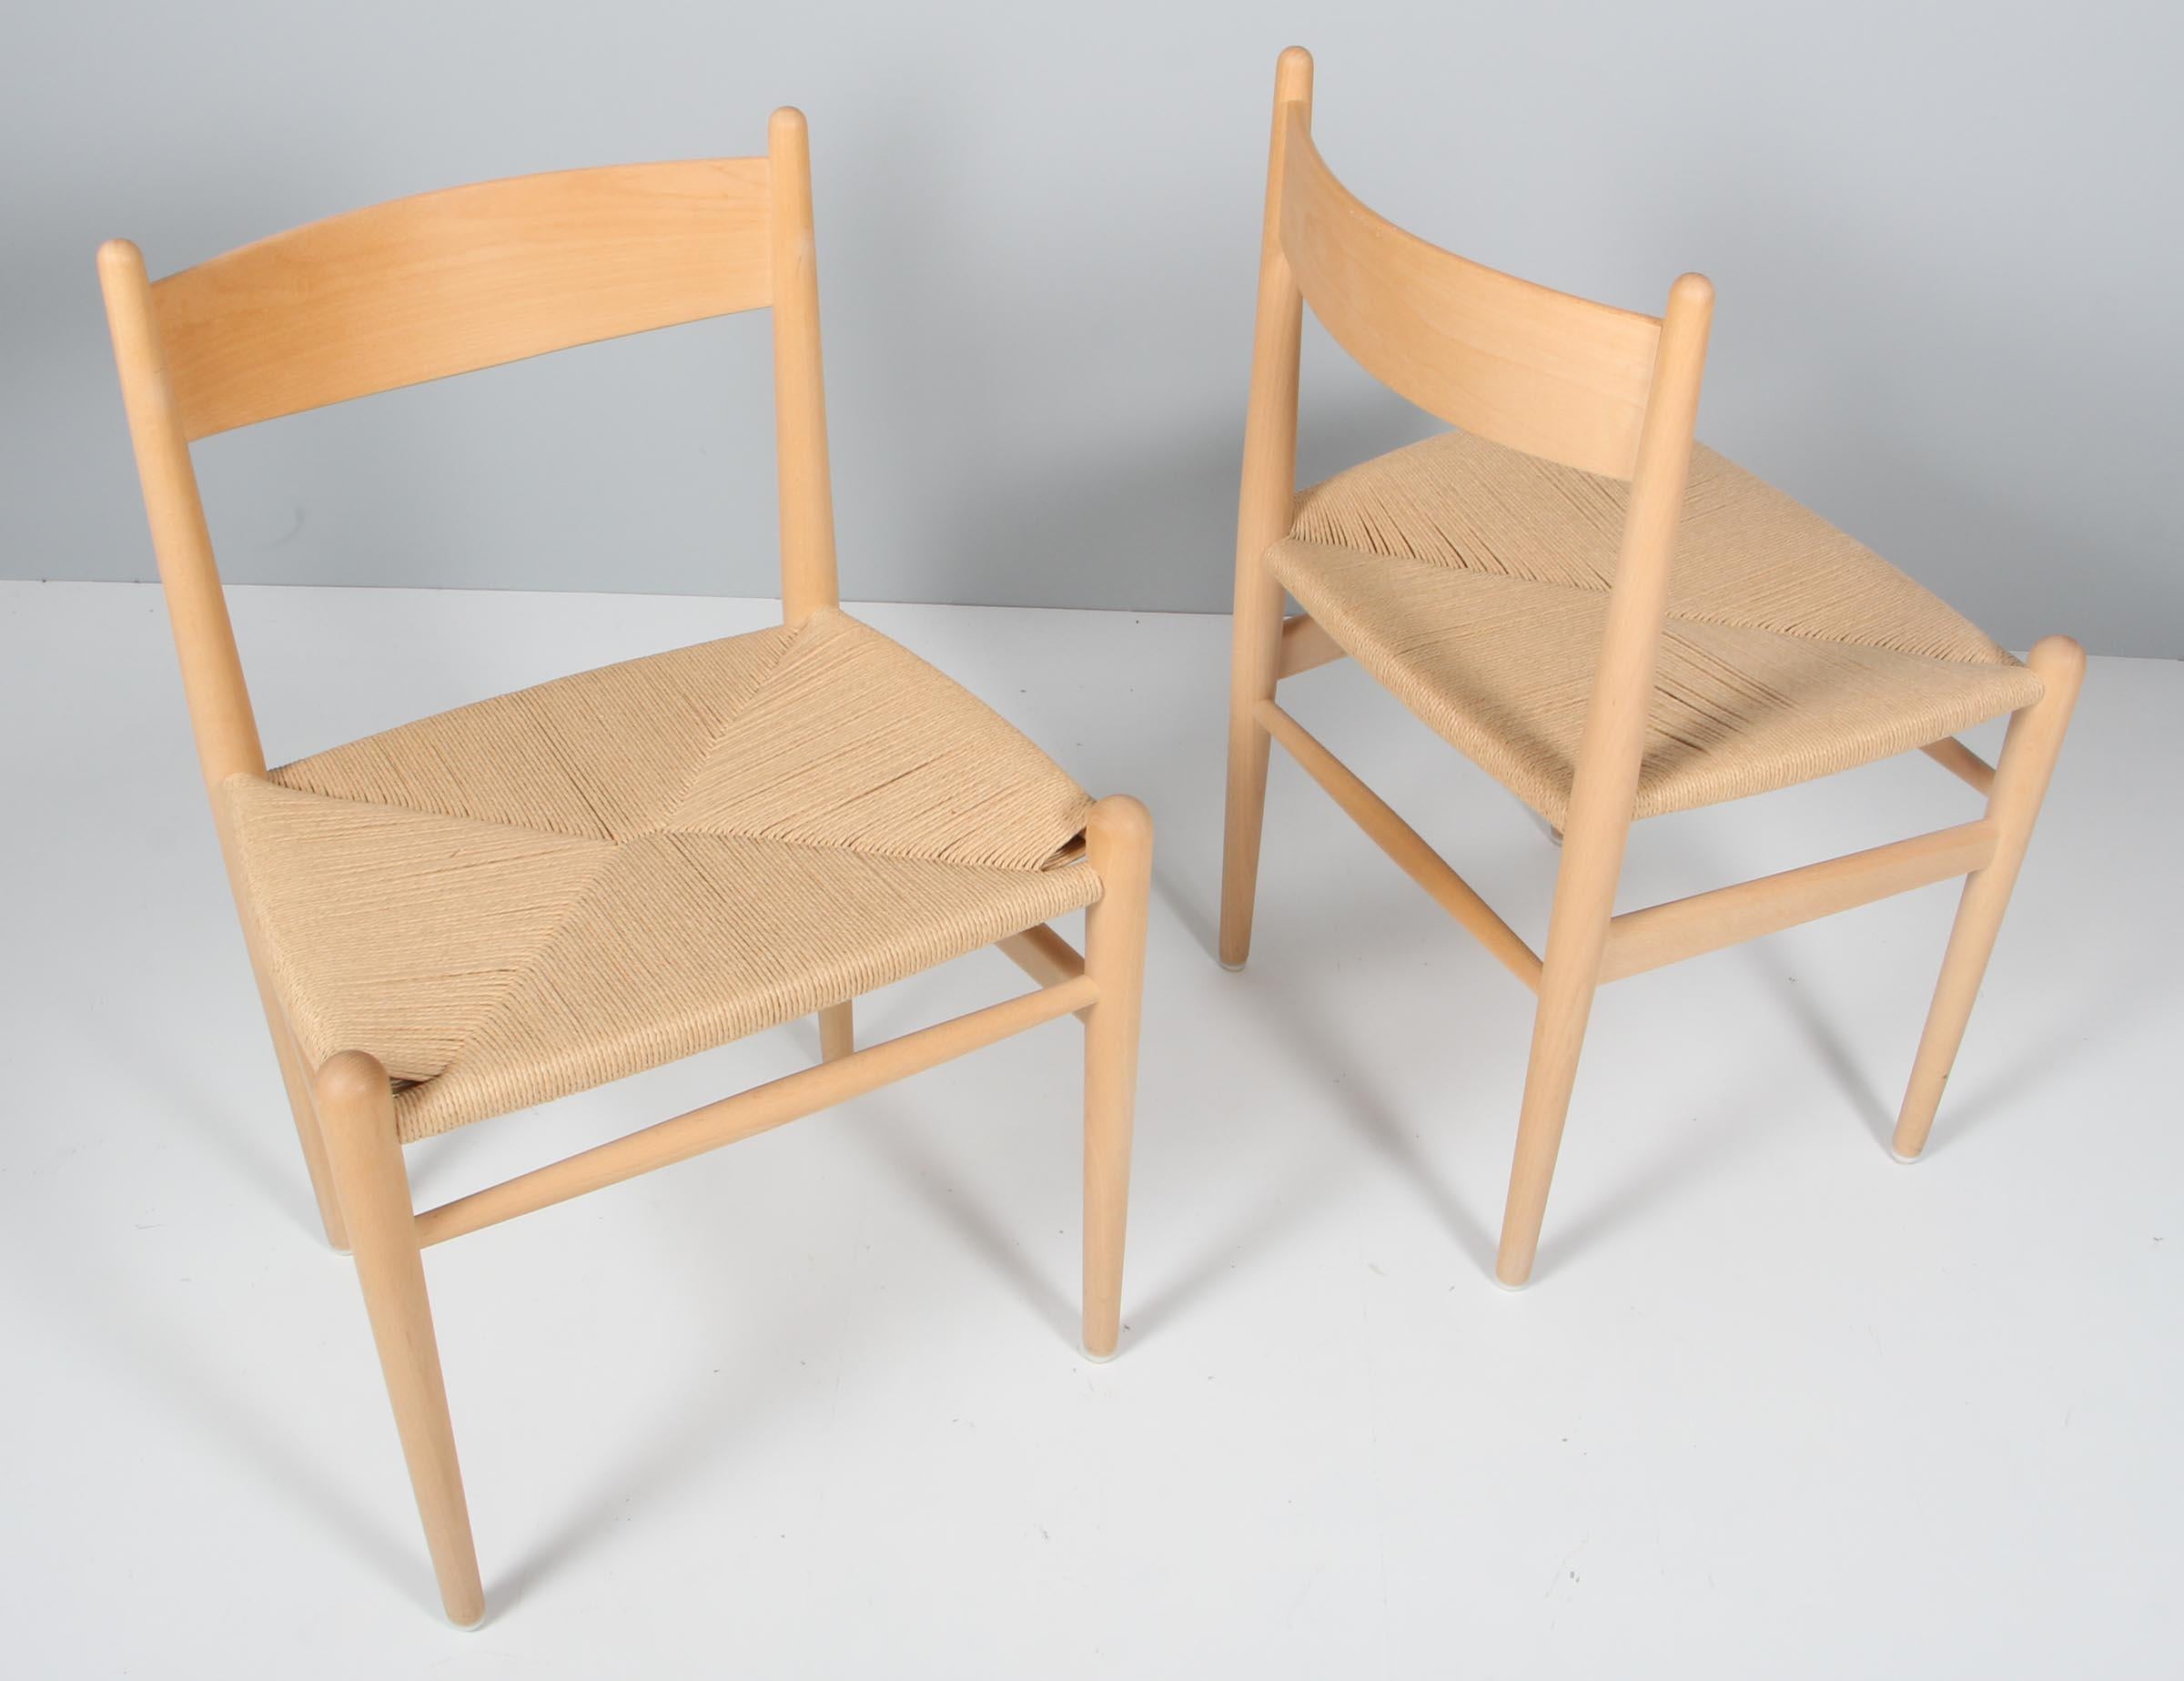 Chaises de salle à manger Hans J. Wegner en bois massif traité au savon, assise en corde de papier d'origine. 

Modèle CH36, fabriqué par Carl Hansen.